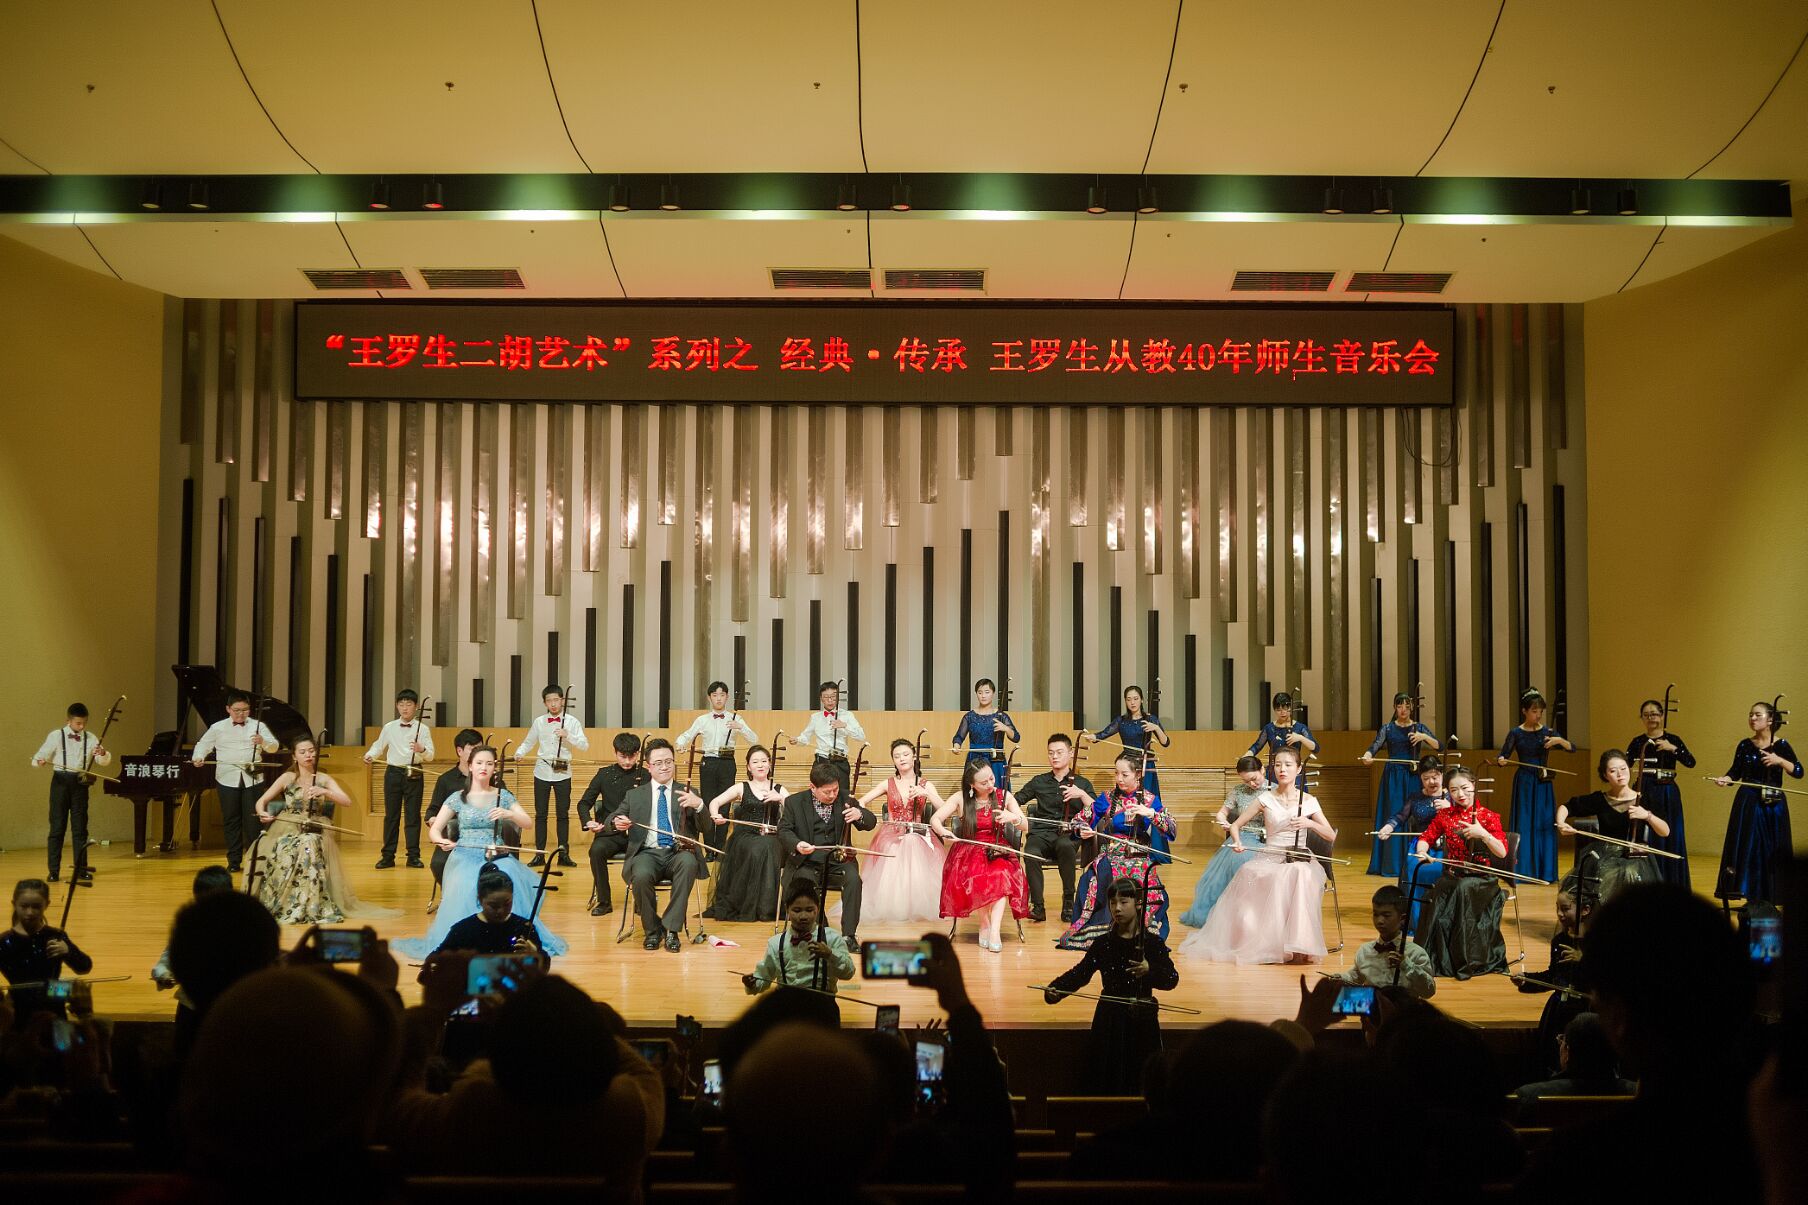 著名二胡演奏家王罗生与其部分学生演绎了14首二胡经典名曲，为观众奉上了一场高品质、高品位、高水准的音乐盛宴。张懿 供图